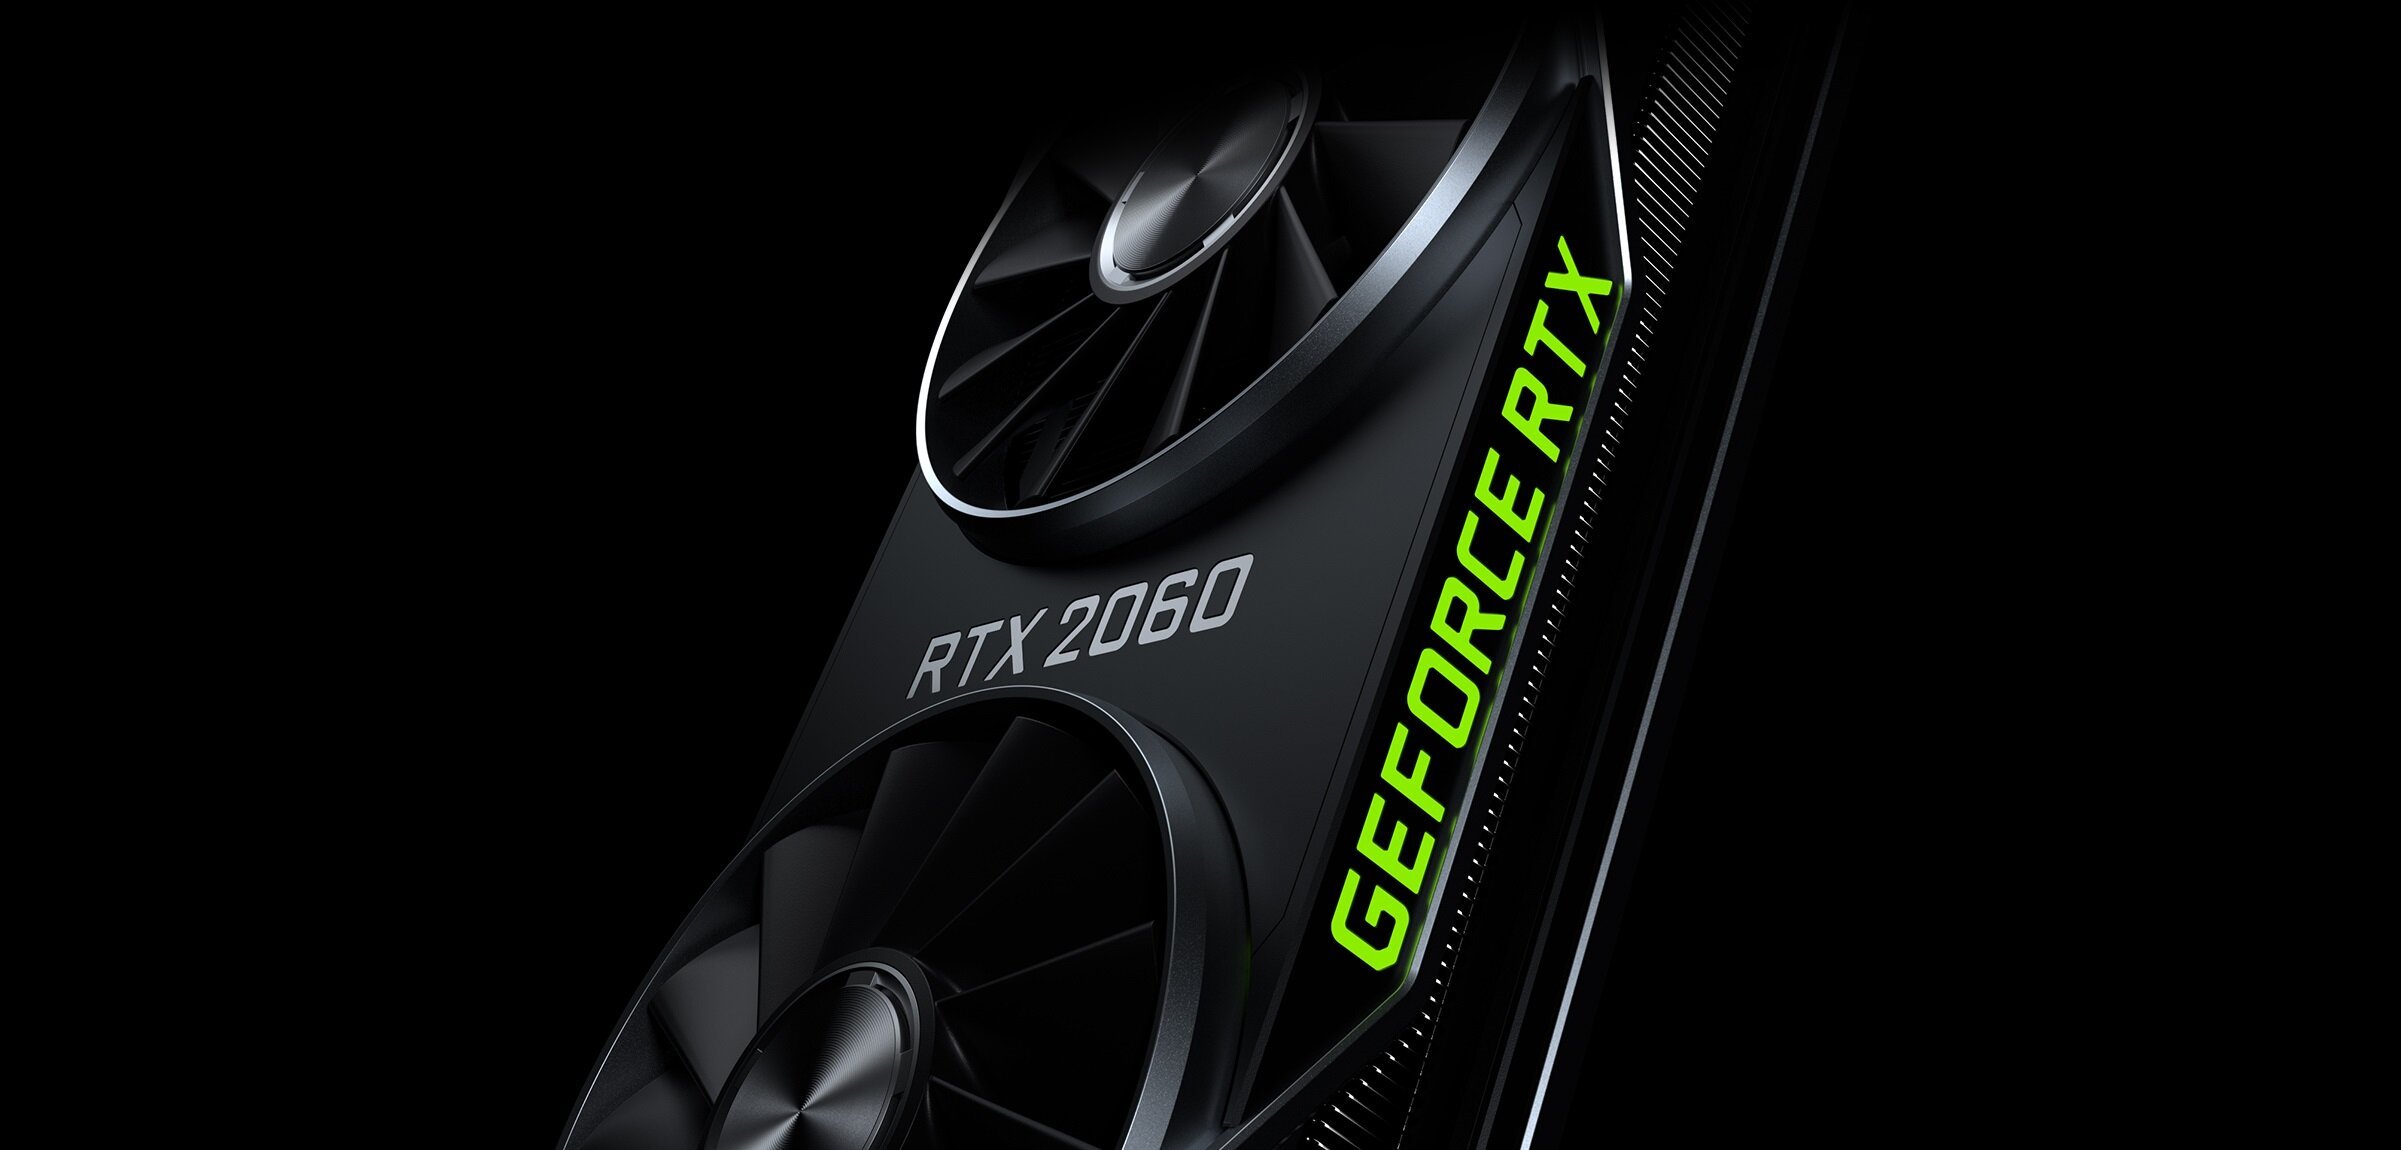 Η Nvidia μειώνει την τιμή της GeForce RTX 2060 στα $299